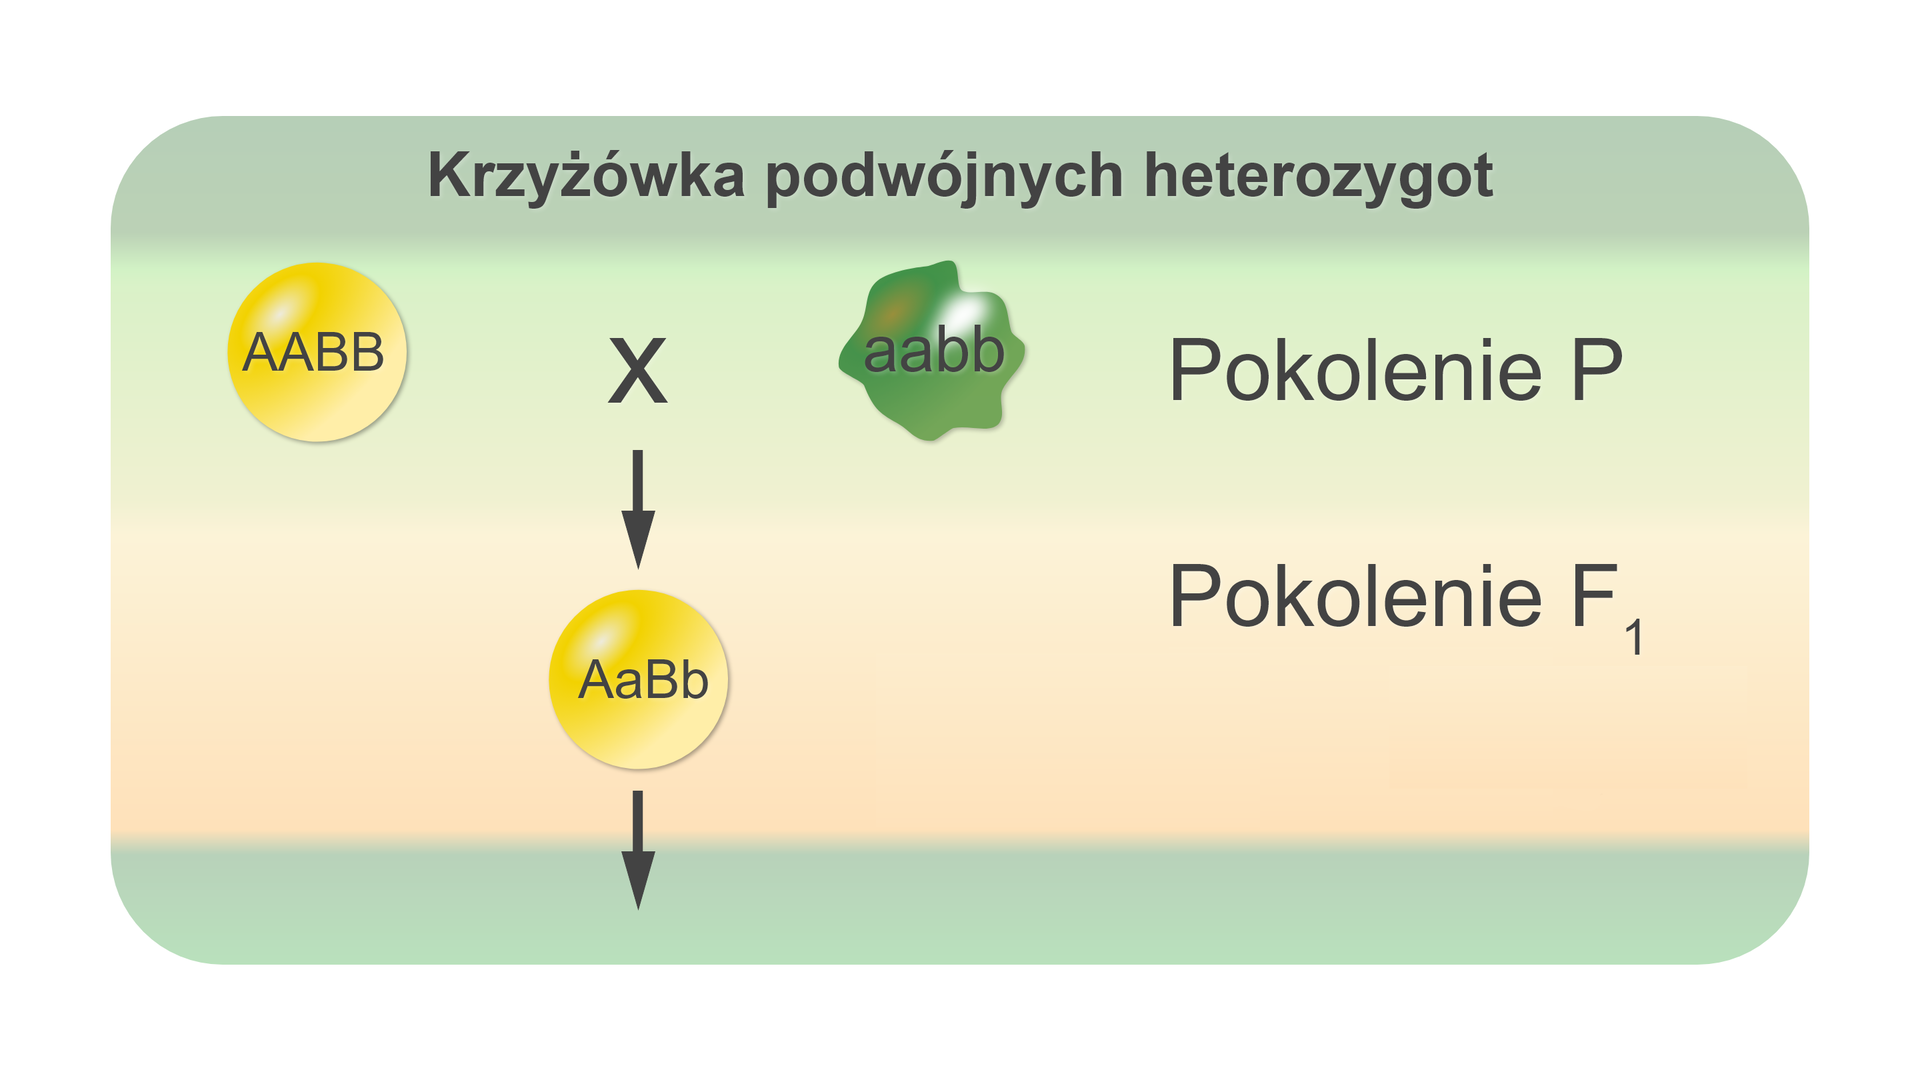 Ilustracja przedstawia krzyżówkę podwójnych heterozygot. Na ilustracji znajduje się napis AABB (zapisane wielkimi literami) na żółtej kulce x aabb (zapisane małymi literami) na zielonej kulce o nieregularnej otoczce. To pokolenie P. Od x prowadzi strzałka w dół do żółtej kulki z genotypem AaBb (zapisane wielką literą A, małą literą a, wielka literą B i małą literą b). To pokolenie F1. Od żółtej kulki o genotypie AaBb (zapisane wielką literą A, małą literą a, wielka literą B i małą literą b) prowadzi strzałka w dół.